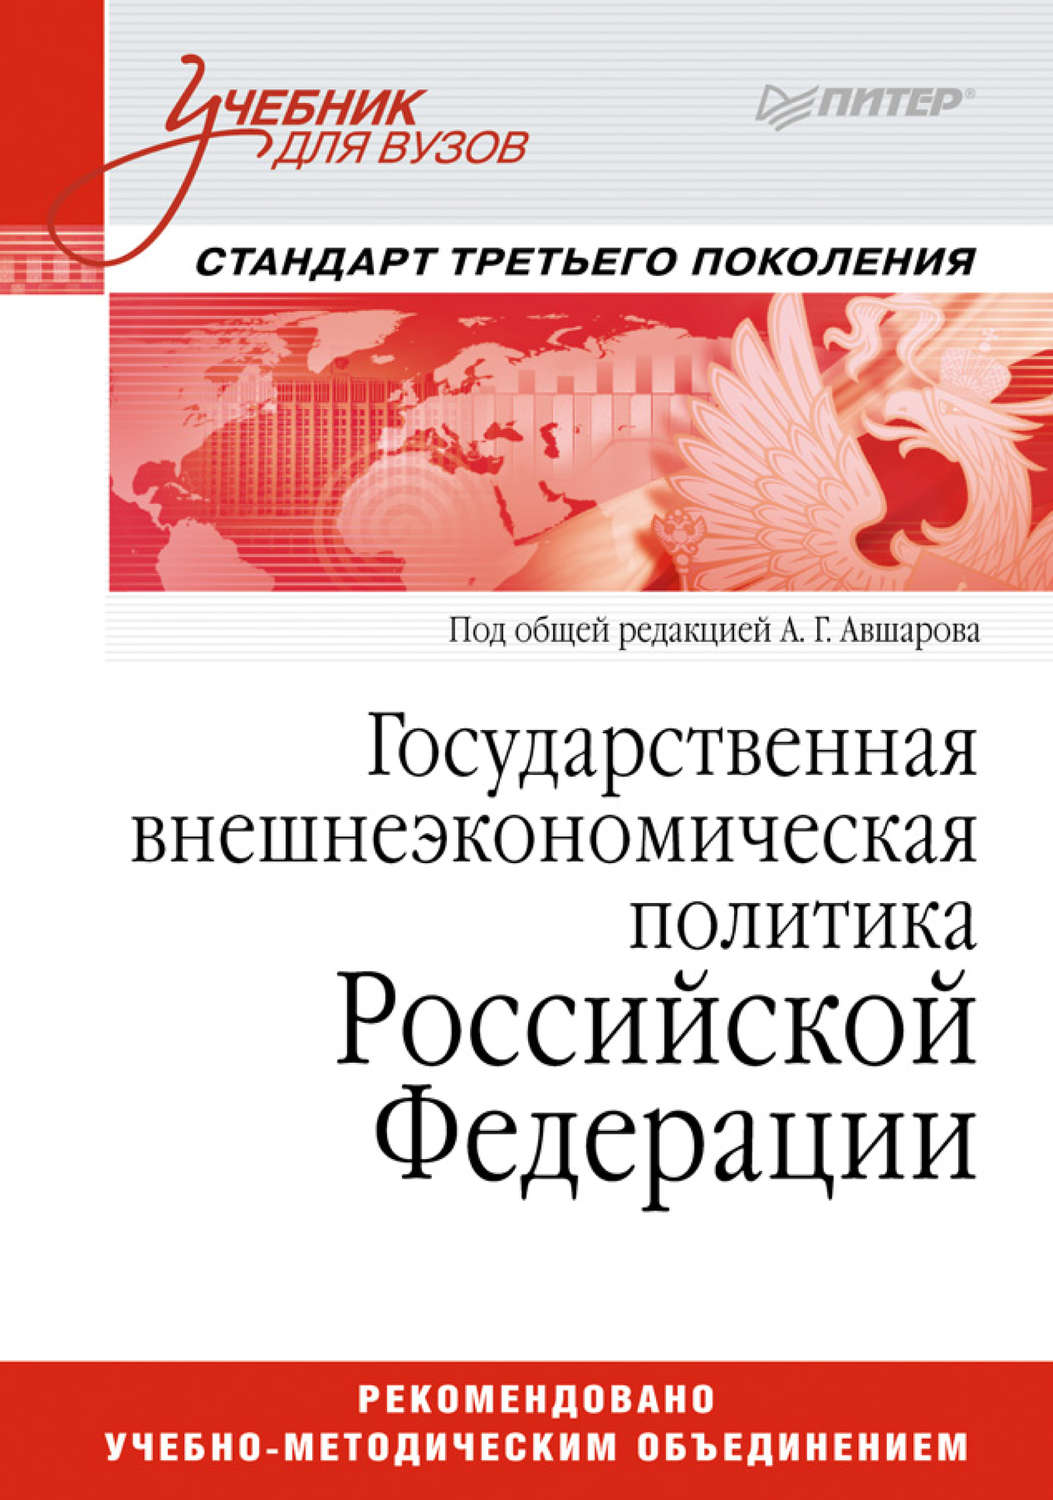 Внешнеэкономическая политика России. Книги по политике. Книги по современной внешней политике России.